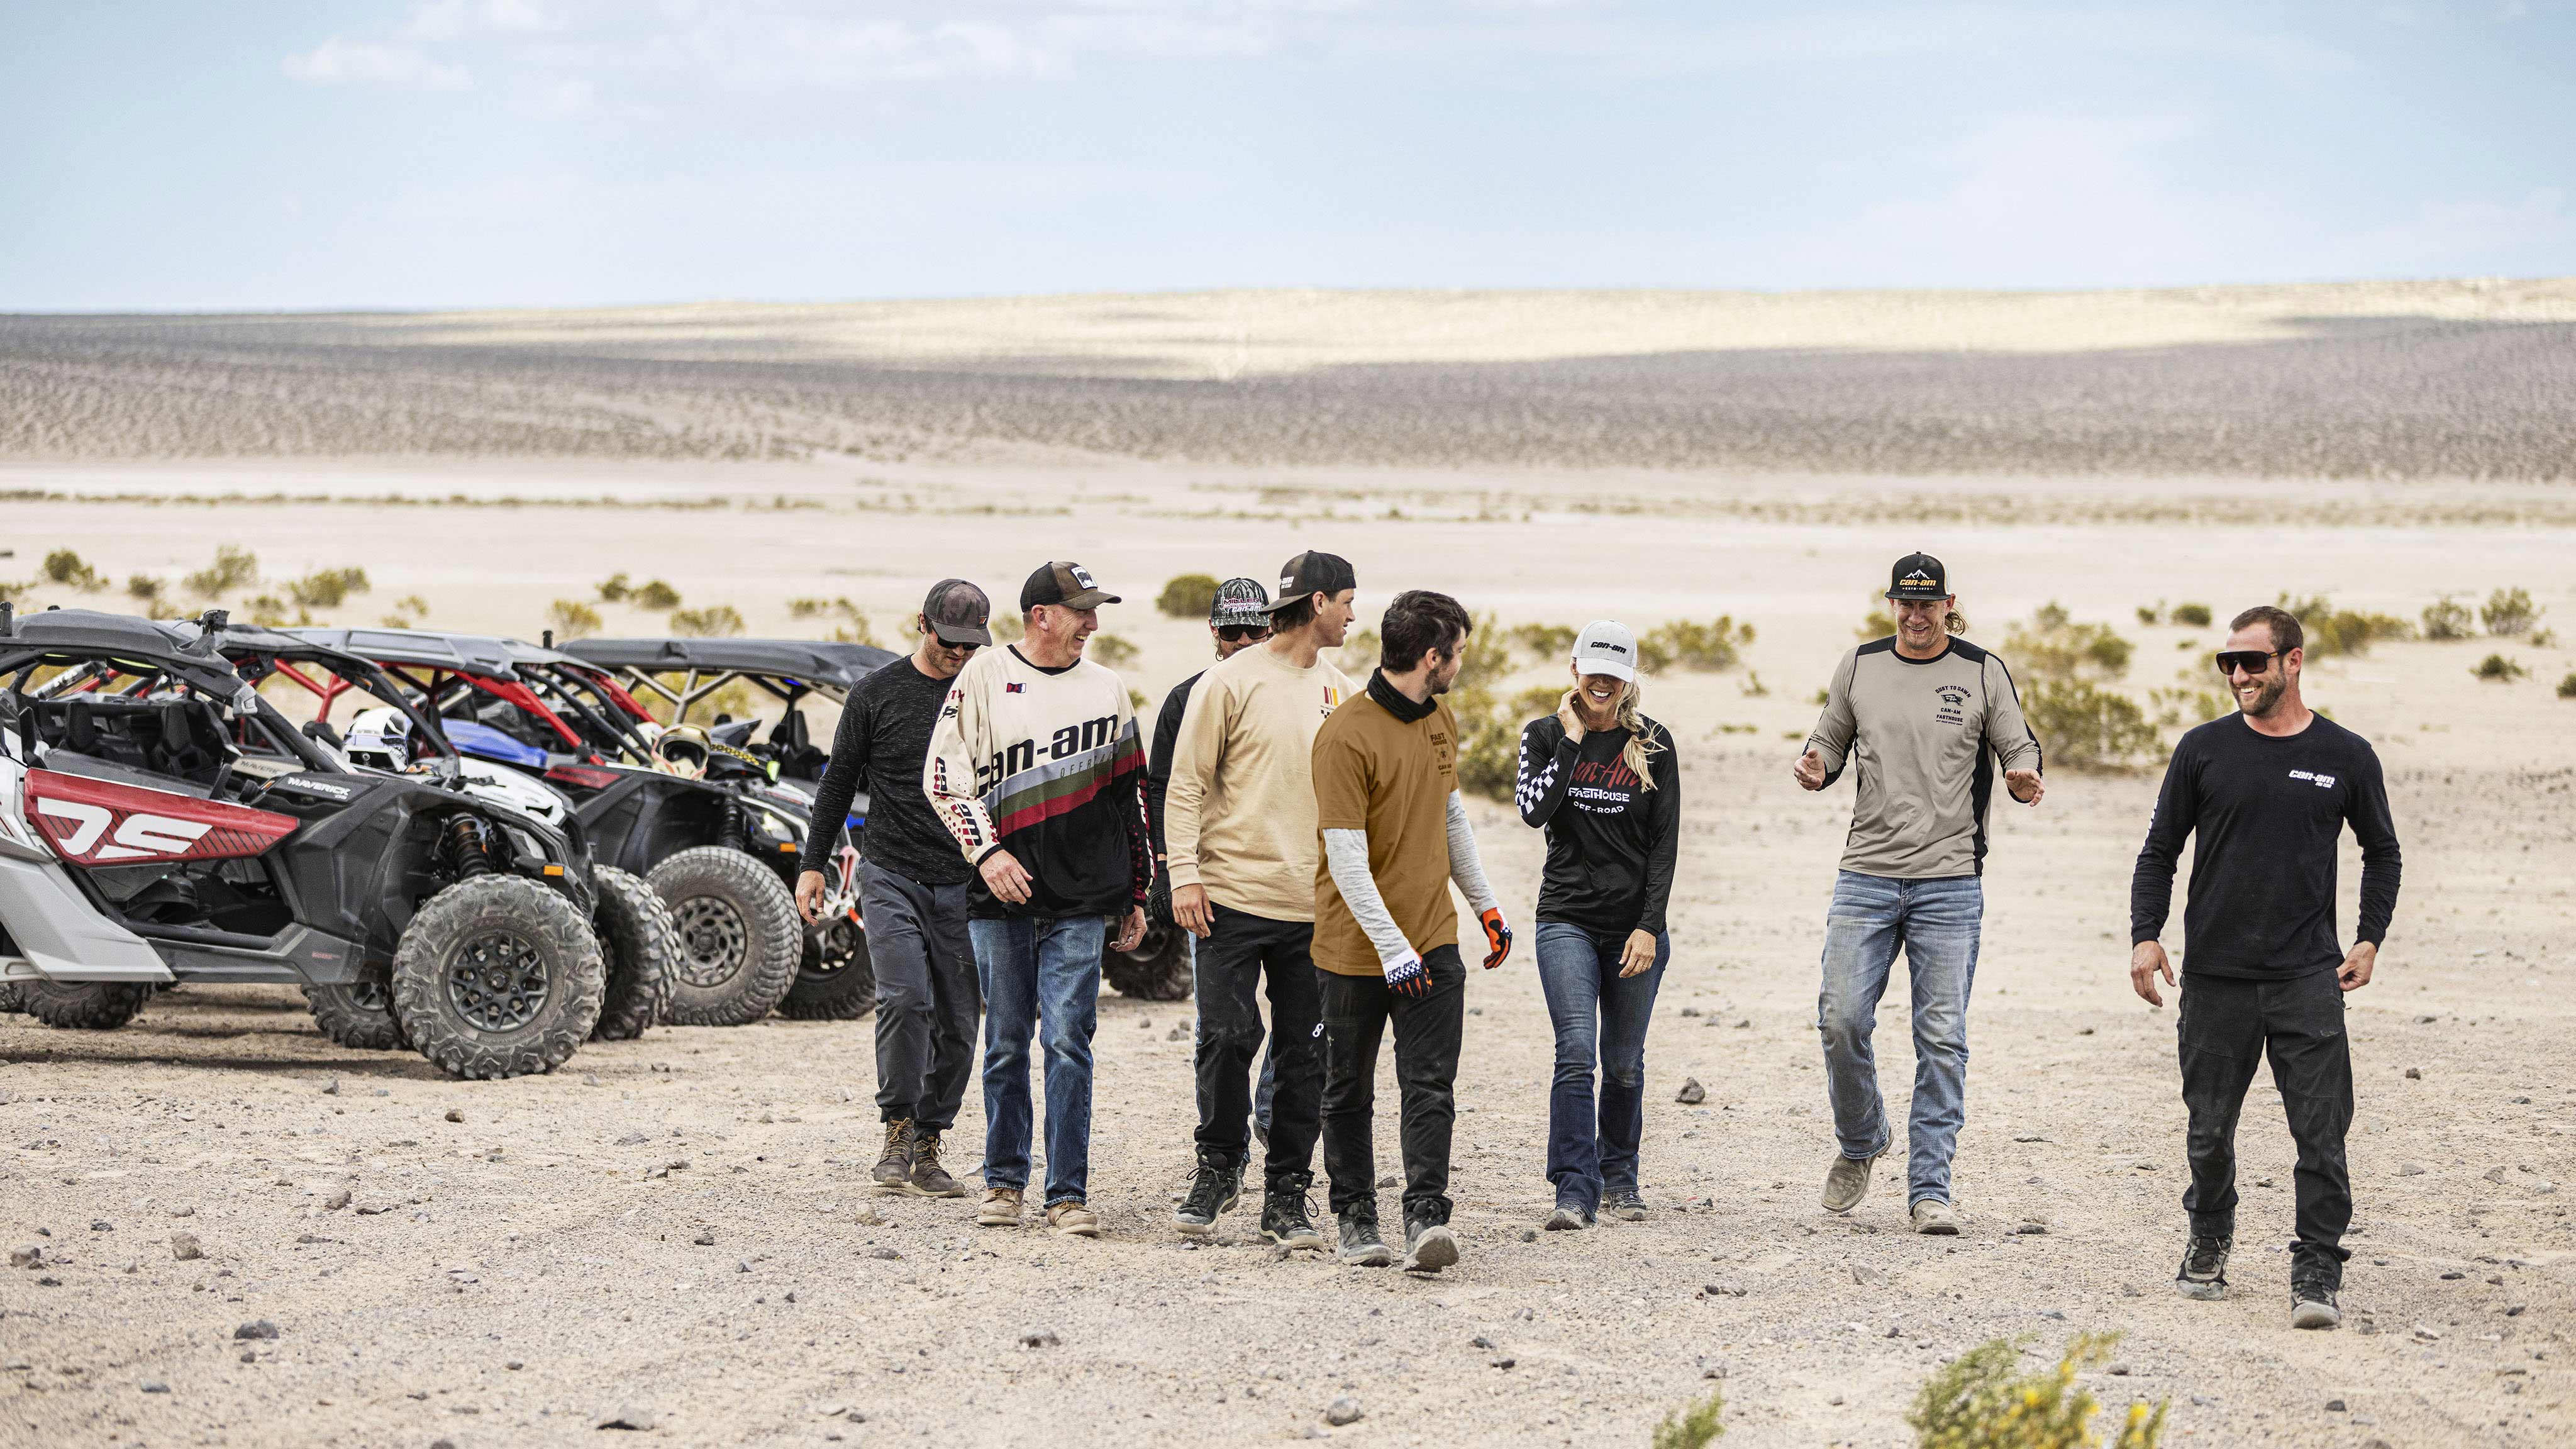 Otto piloti che camminano in avanti nel deserto, con tre veicoli Can-Am Maverick sullo sfondo